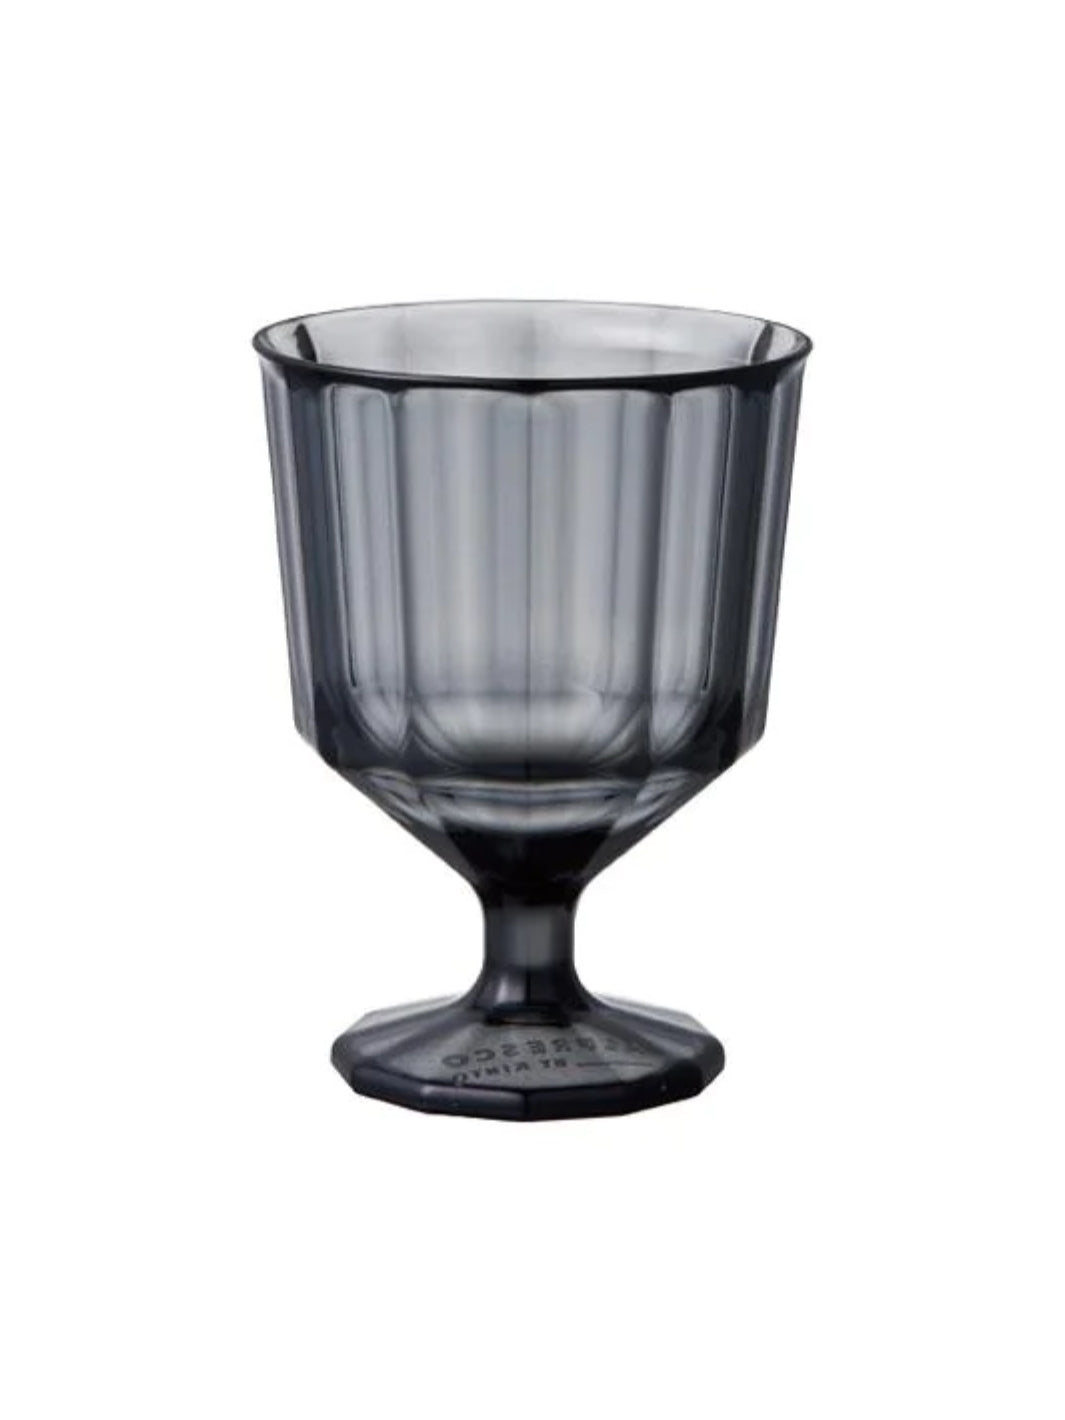 KINTO ALFRESCO Wine Glass (250ml/8.5oz)